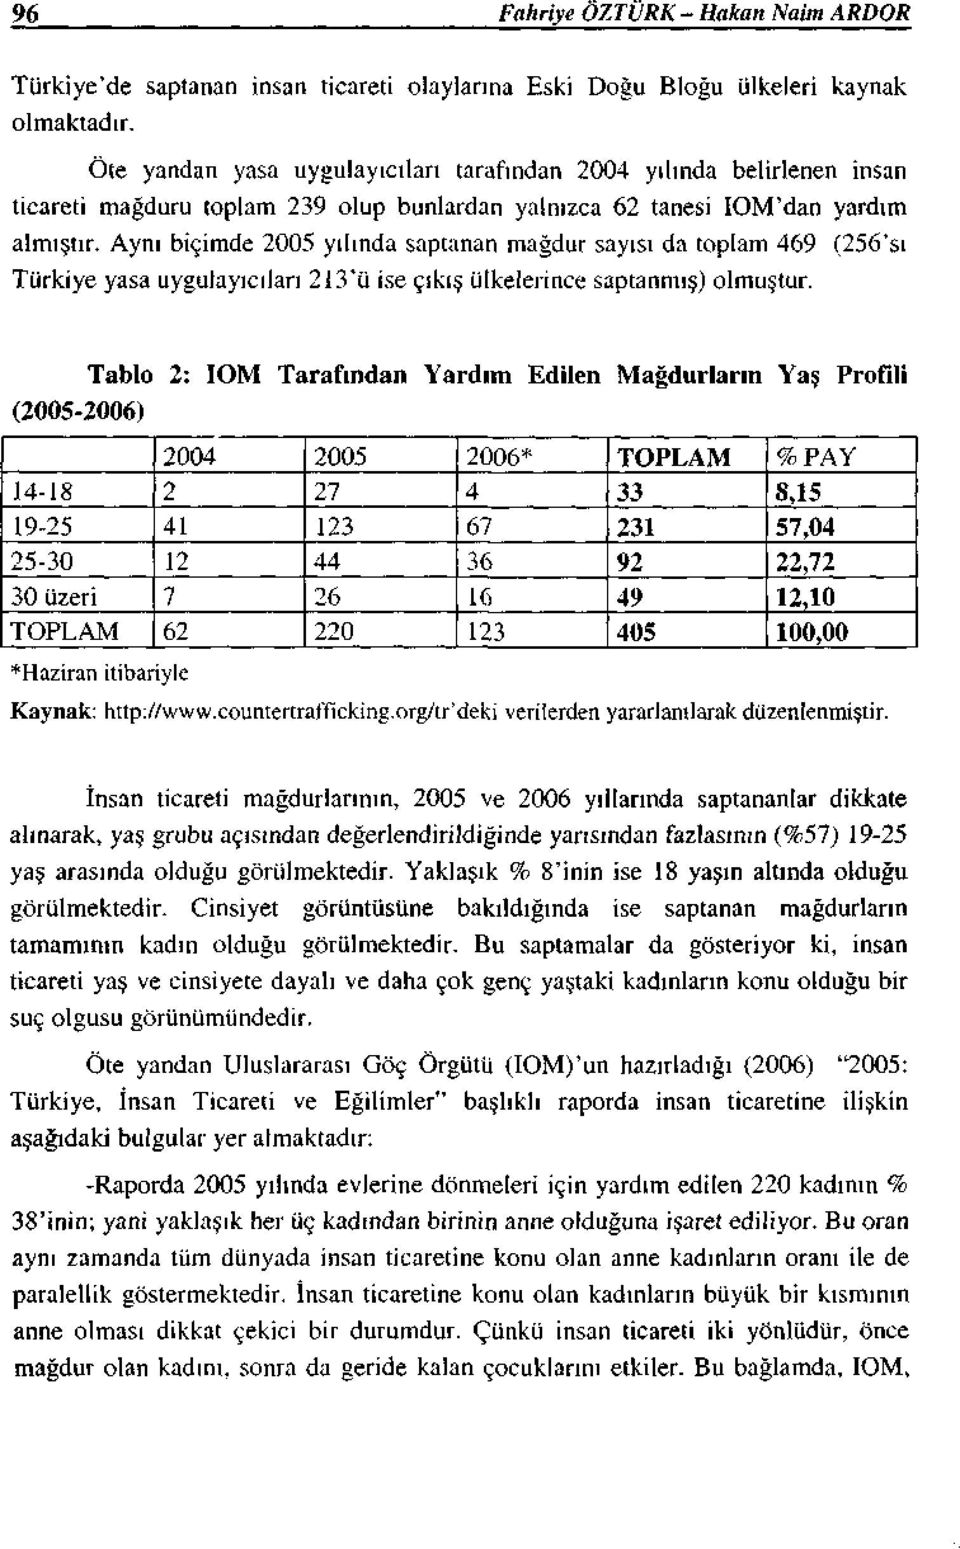 Aynı biçimde 2005 yılında saptanan mağdur sayısı da toplam 469 (256'sı Türkiye yasa uygulayıcıları 2!3'ü ise çıkış ülkelerince saptanmış) olmuştur.